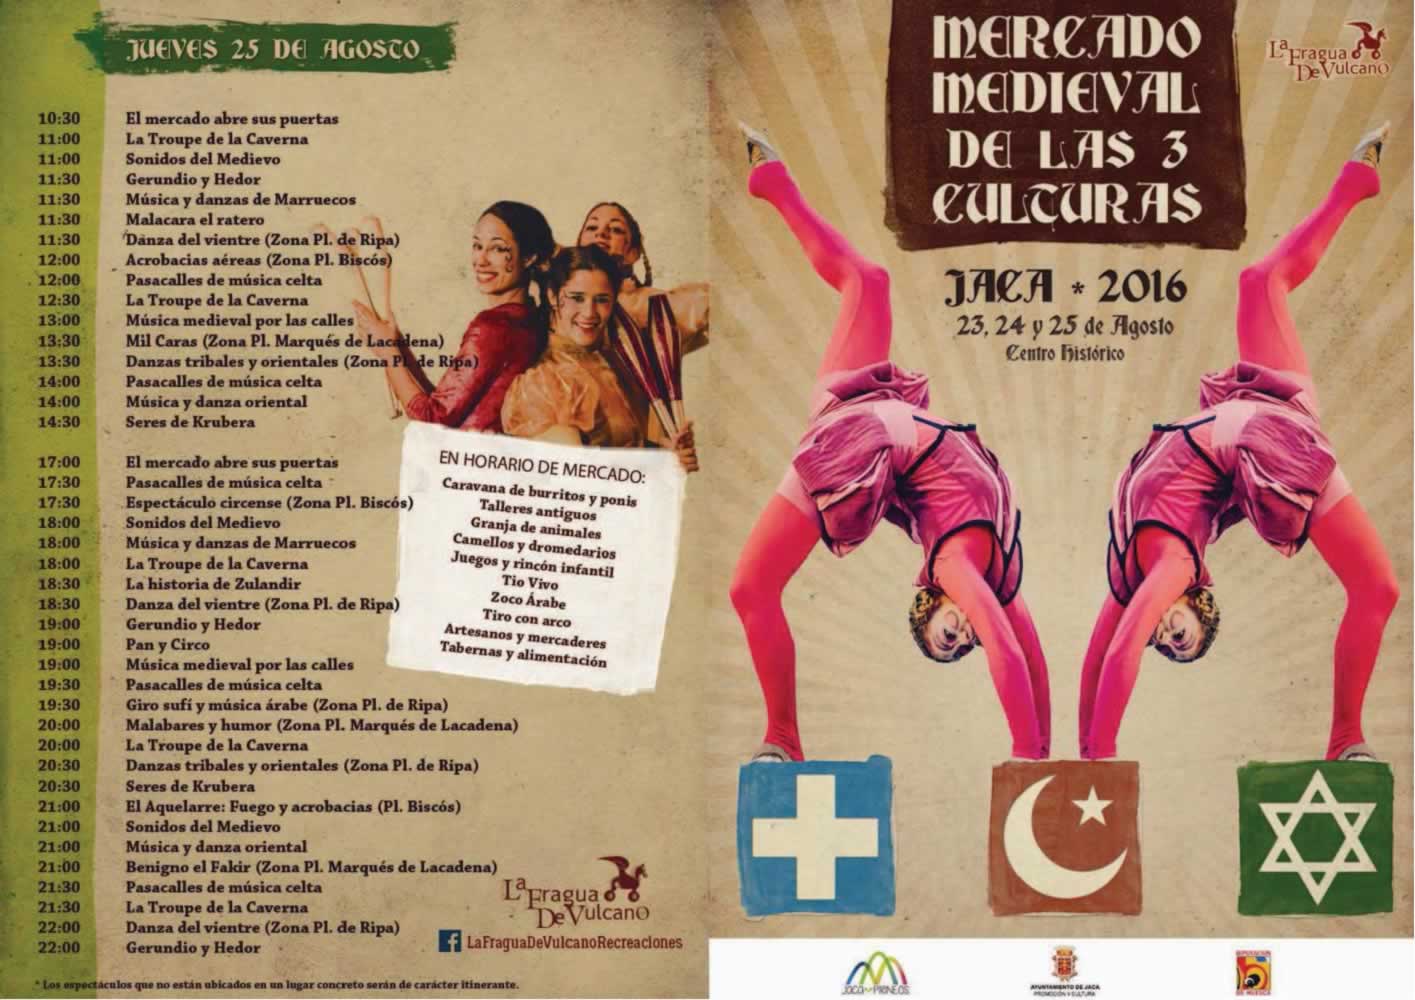 Programacion del Mercado de las tres culturas en Jaca, Huesca del 23 al 25 de Agosto